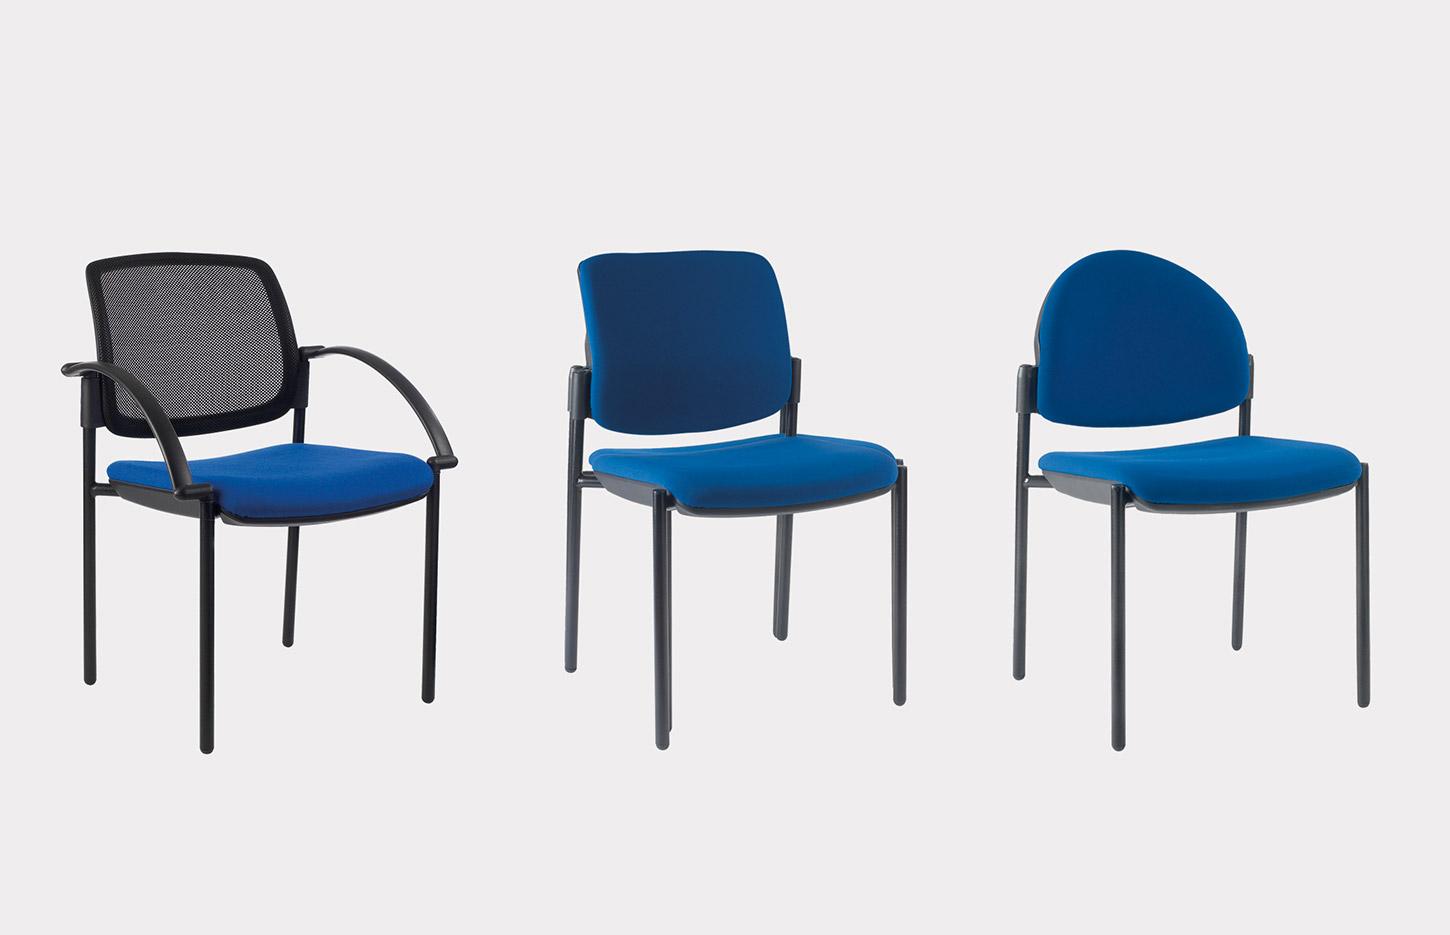 Chaise visiteur polyvalente avec tissu ou résille, Fabrication Française, gamme Les Contemporains, mobilier de bureau France Bureau